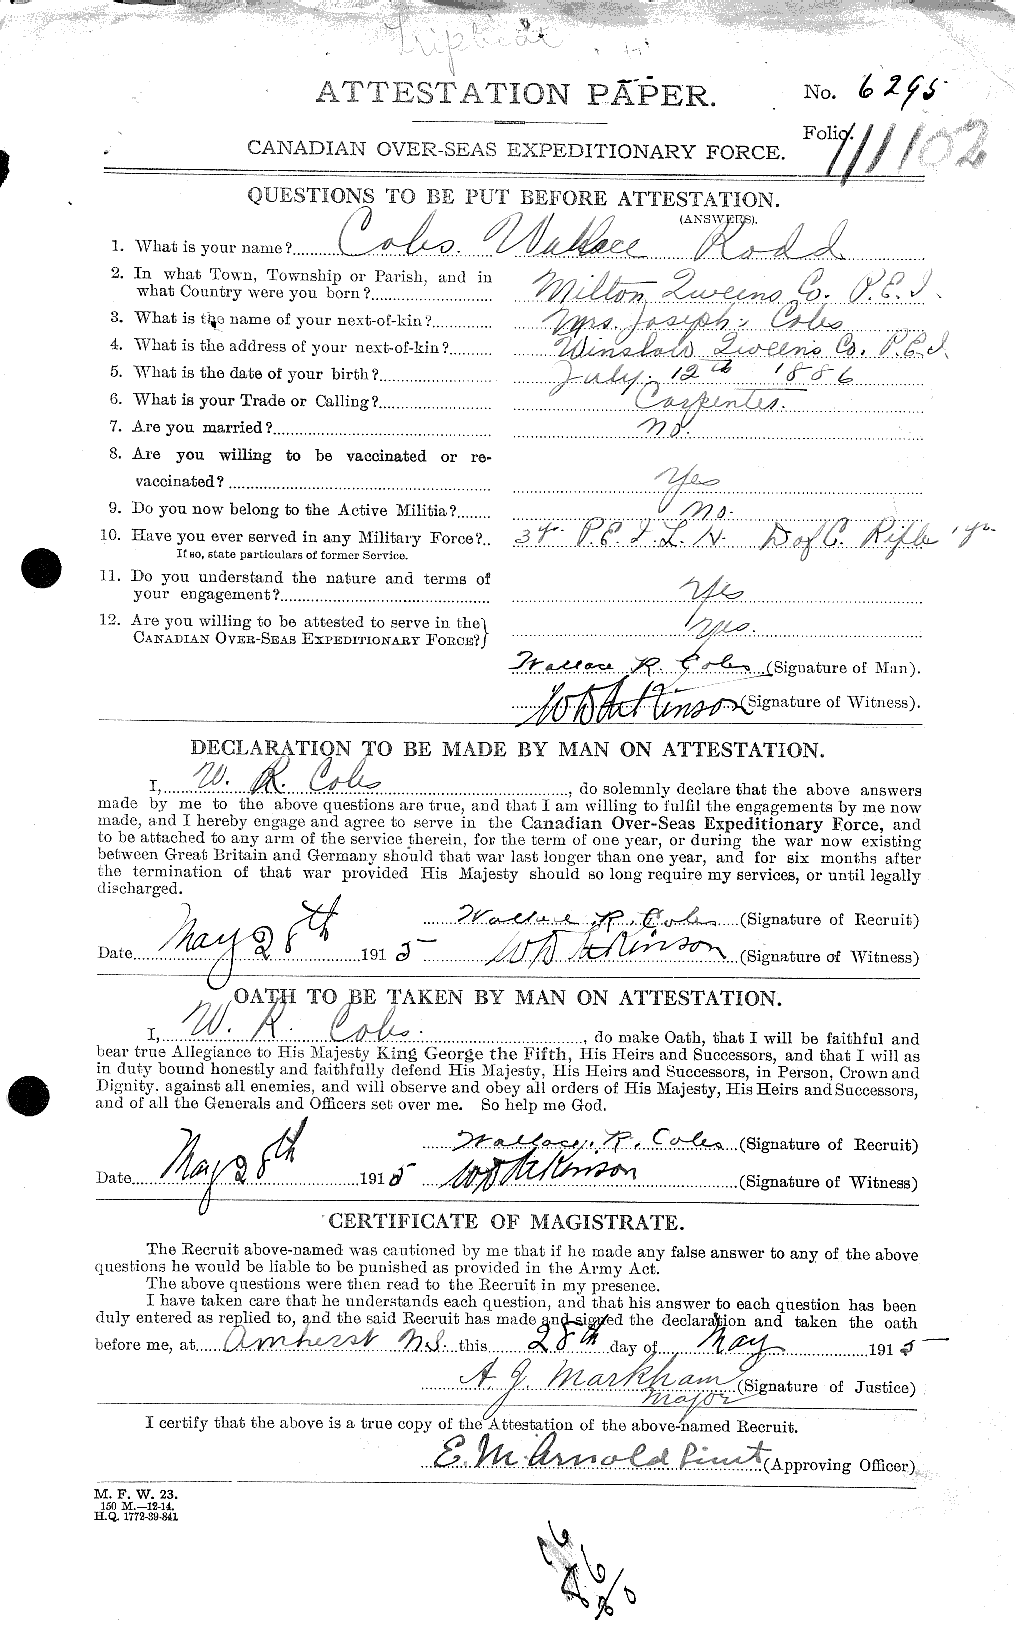 Dossiers du Personnel de la Première Guerre mondiale - CEC 028423a